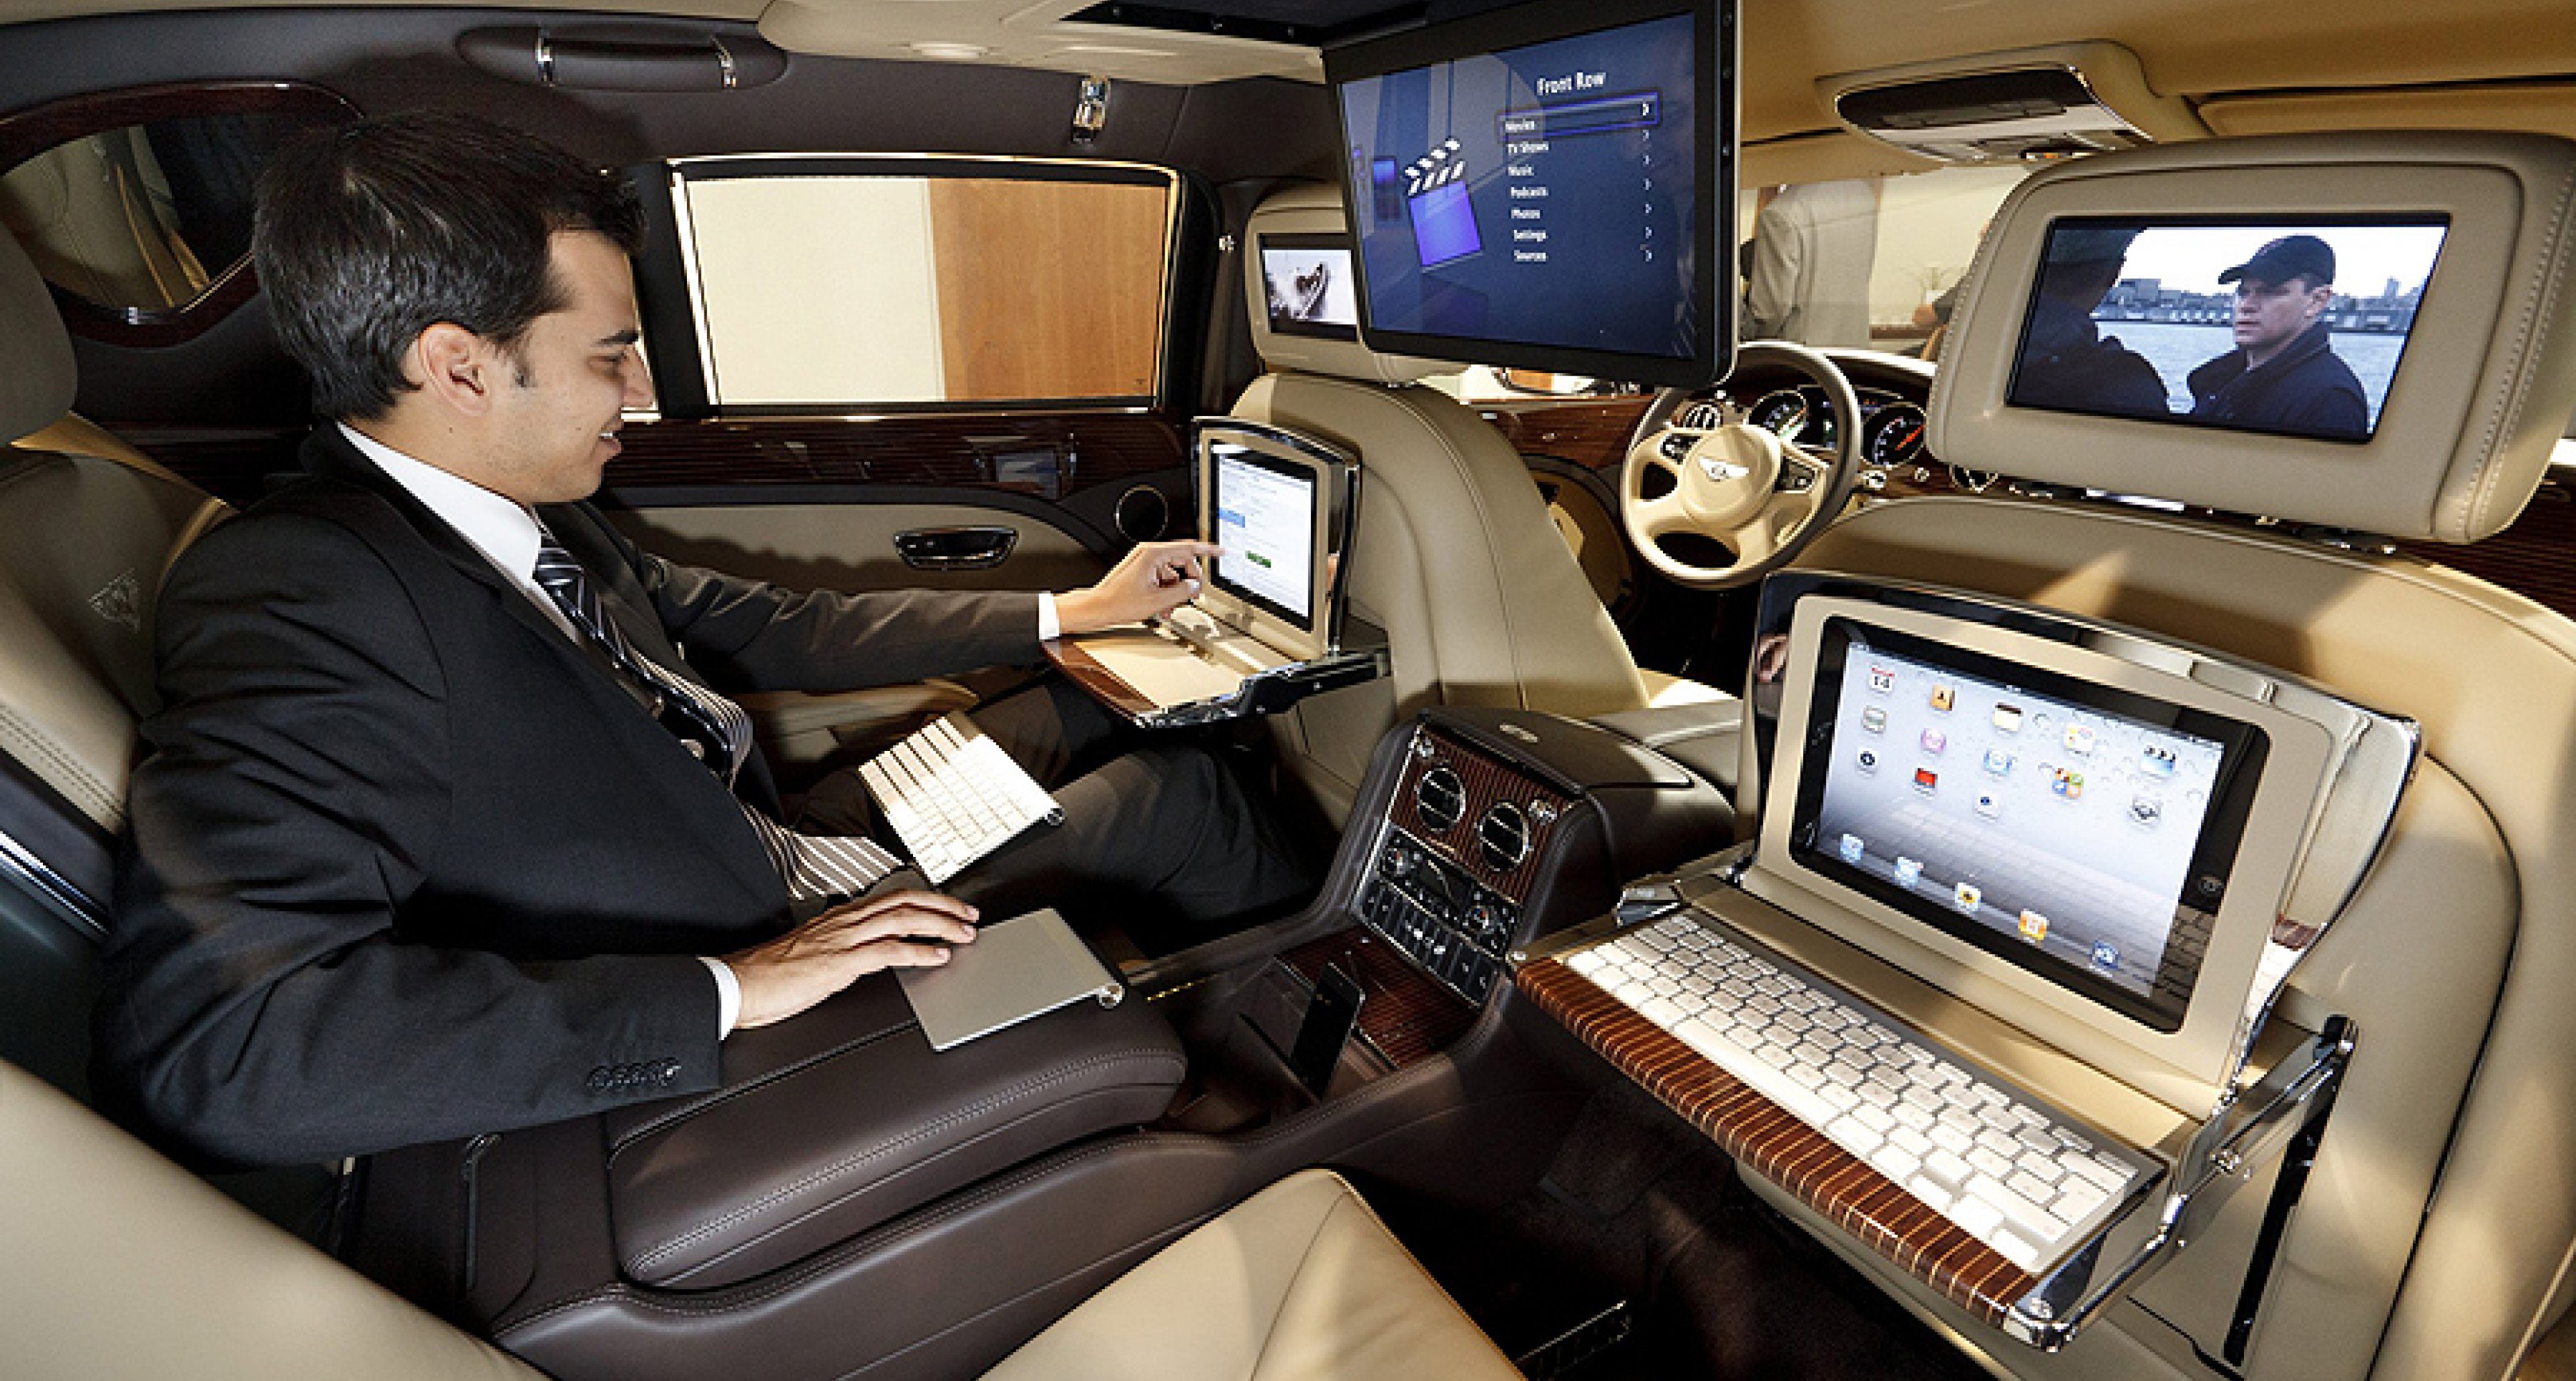 Bentley Mulsanne Executive Interior Concept: Rolling Boardroom